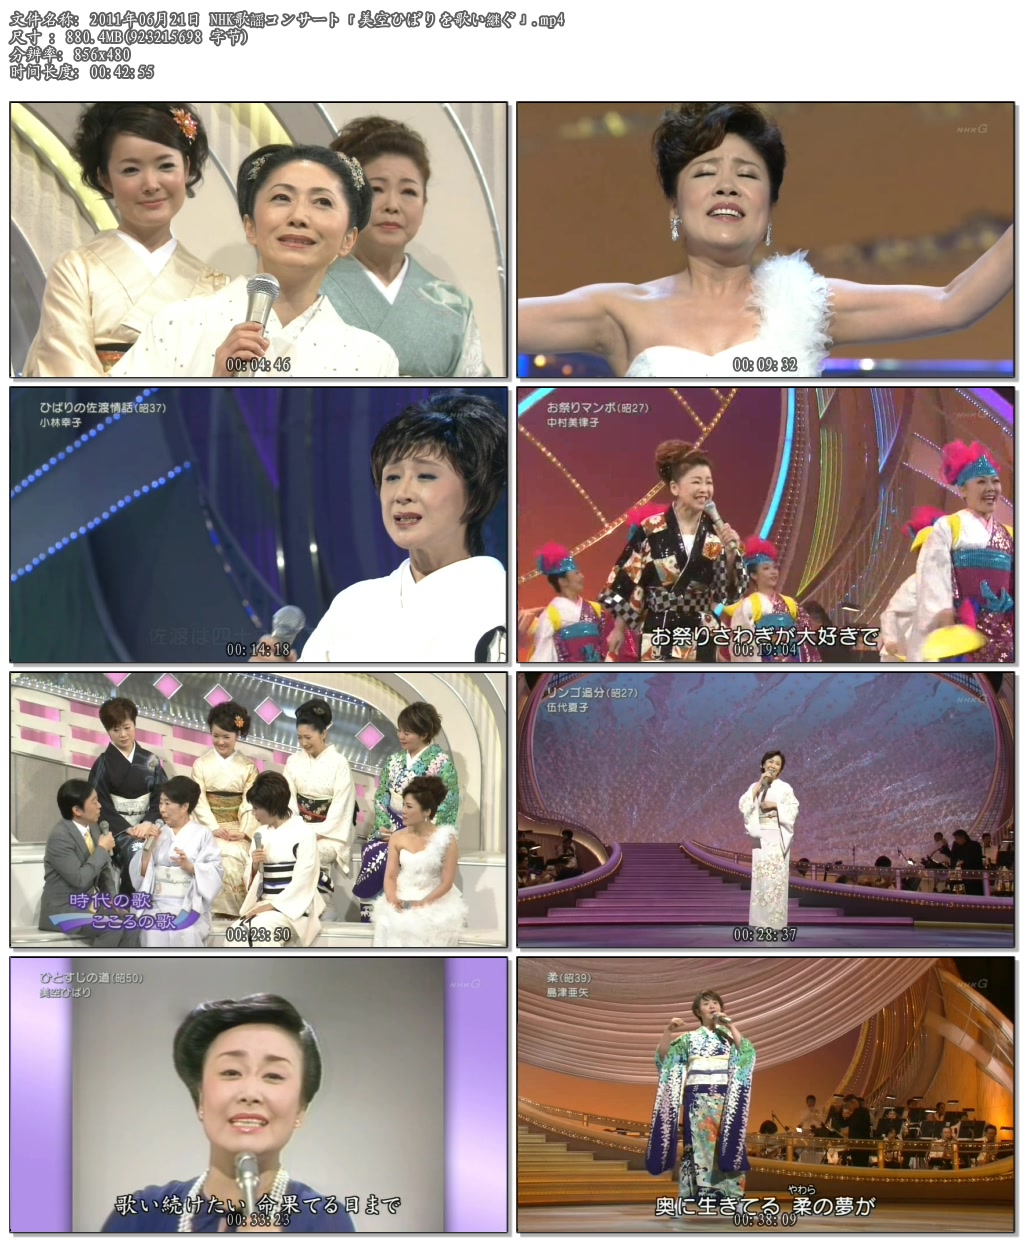 2011年06月21日 NHK歌謡コンサート「美空ひばりを歌い継ぐ」.mp4.jpg